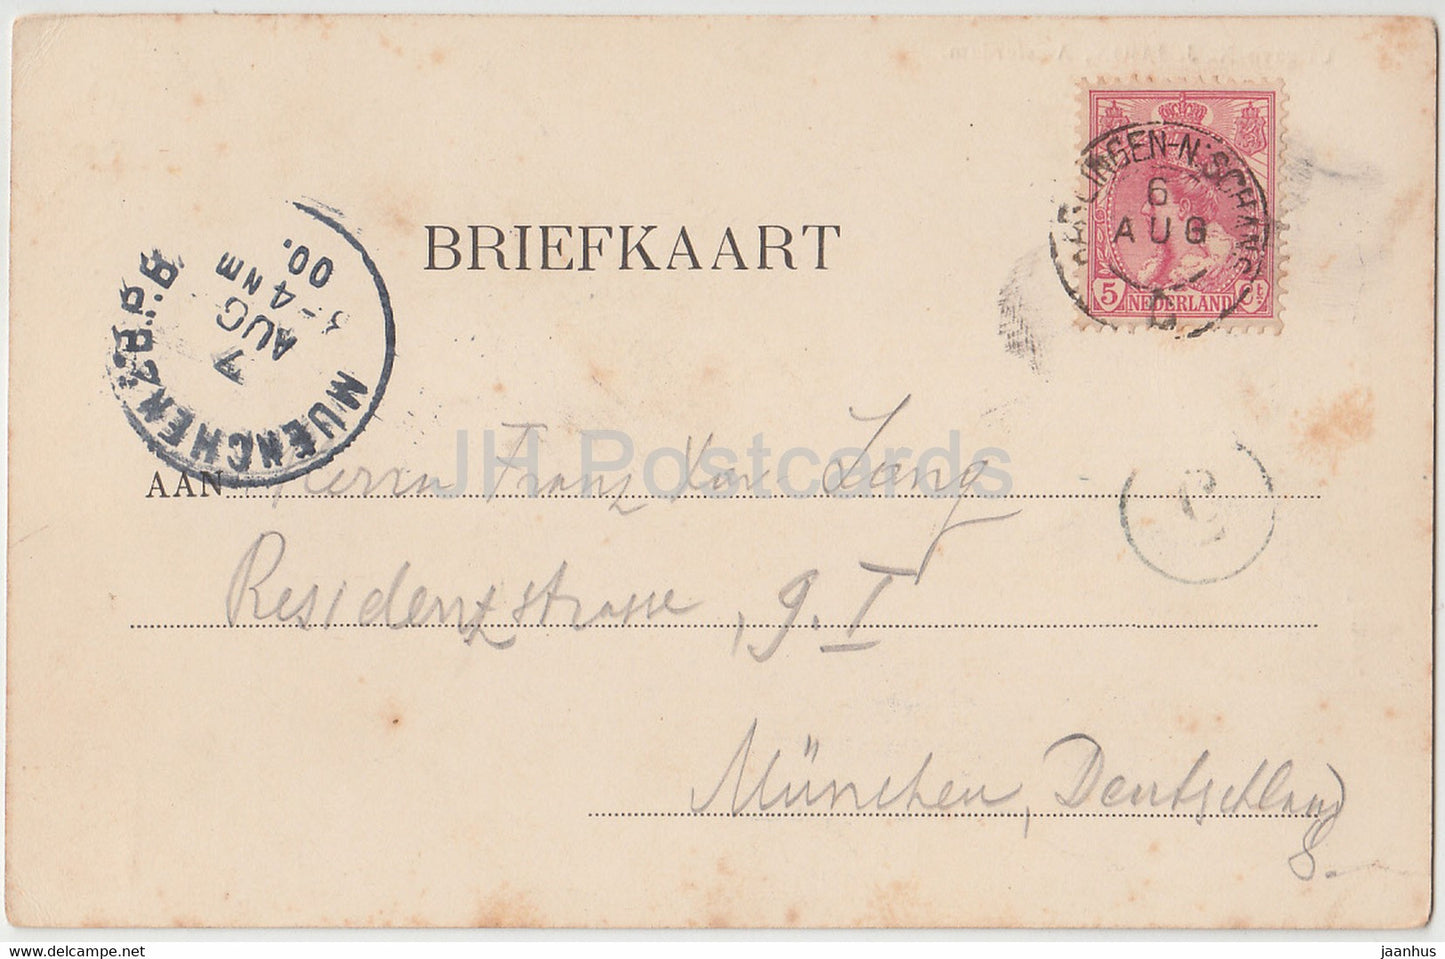 Amsterdam - Molen bij het oude Funen - moulin à vent - carte postale ancienne - 1900 - Pays-Bas - utilisé